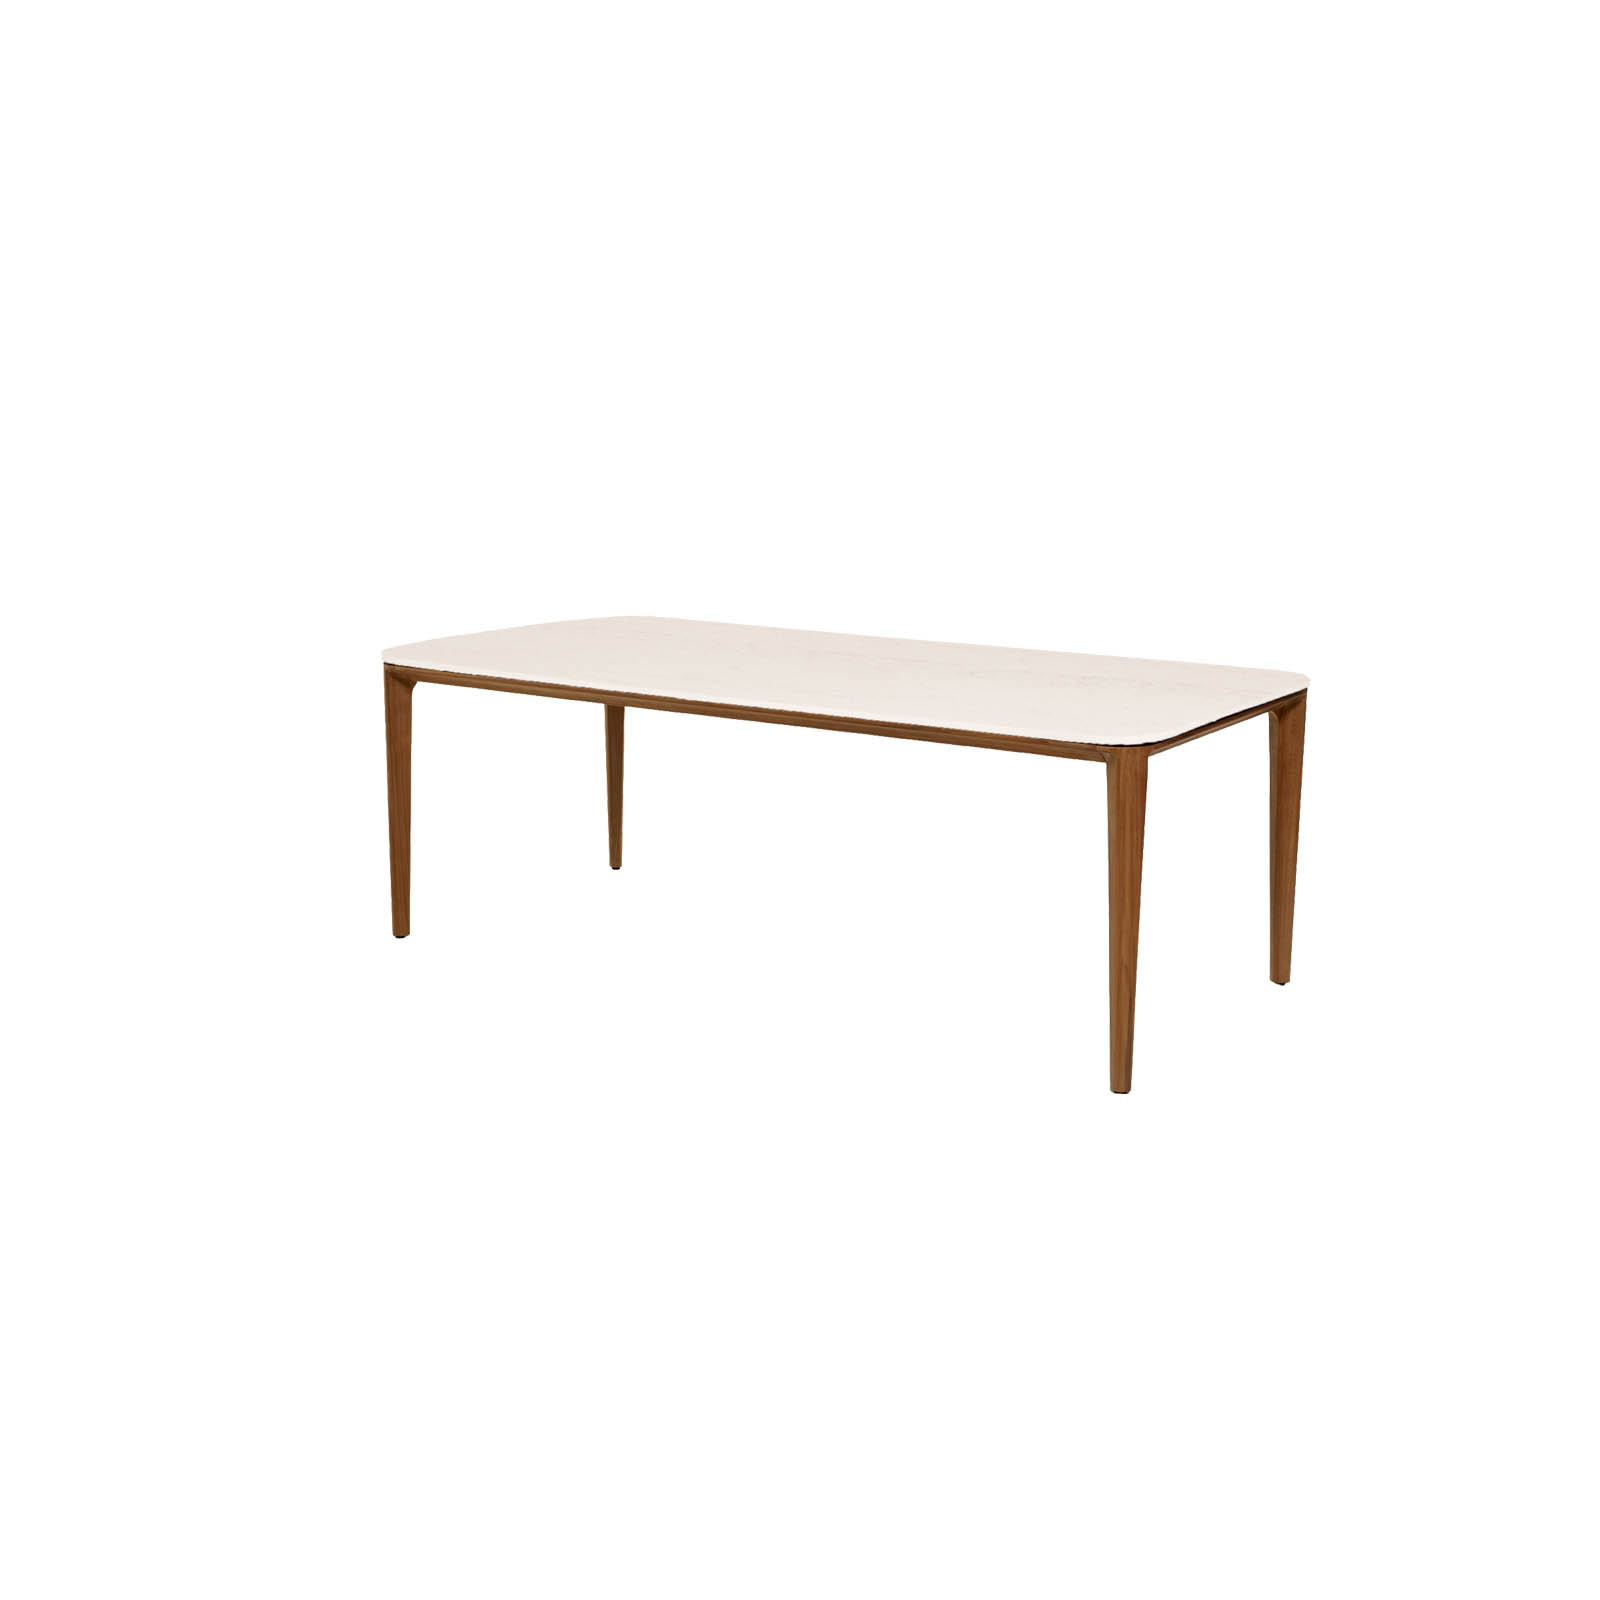 Aspect Tisch 210x100 cm aus Teak  mit Tischplatte aus Ceramic in Travert